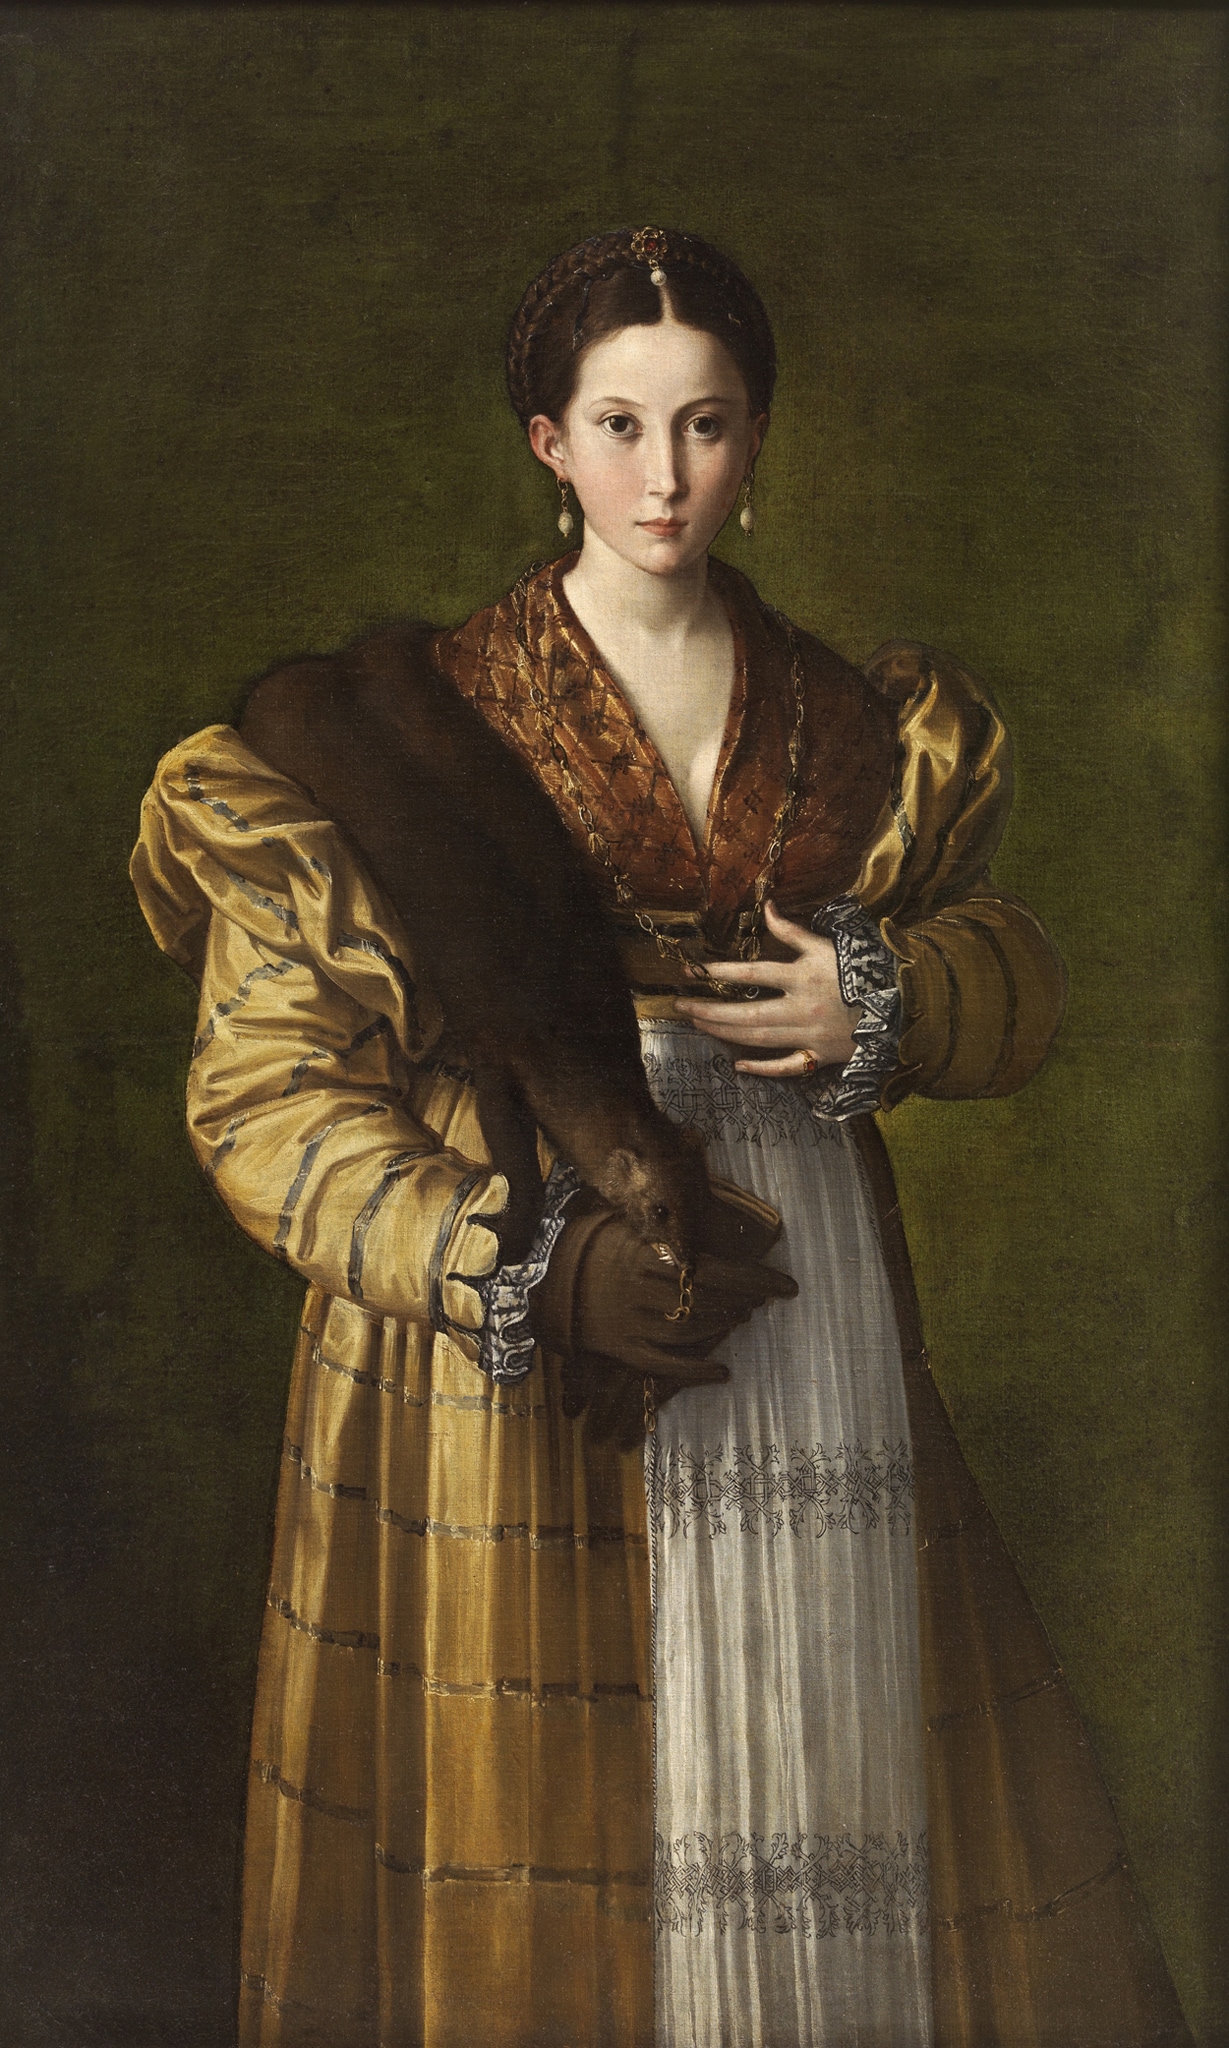 Parmigianino, Antea, 1530 ca., olio su tela, 136x86cm. La giovane donna ritratta era stata riconosciuta come Antea, cortigiana amata da Parmigianino (1503-1540) al tempo del soggiorno romano (1524-27). La giovane, elegante ed enigmatica, in abbigliamento aristocratico e ricercato, apparentemente ferma, viene colta nell’atto di girarsi, come suggerisce la manica destra ingrandita in primo piano.